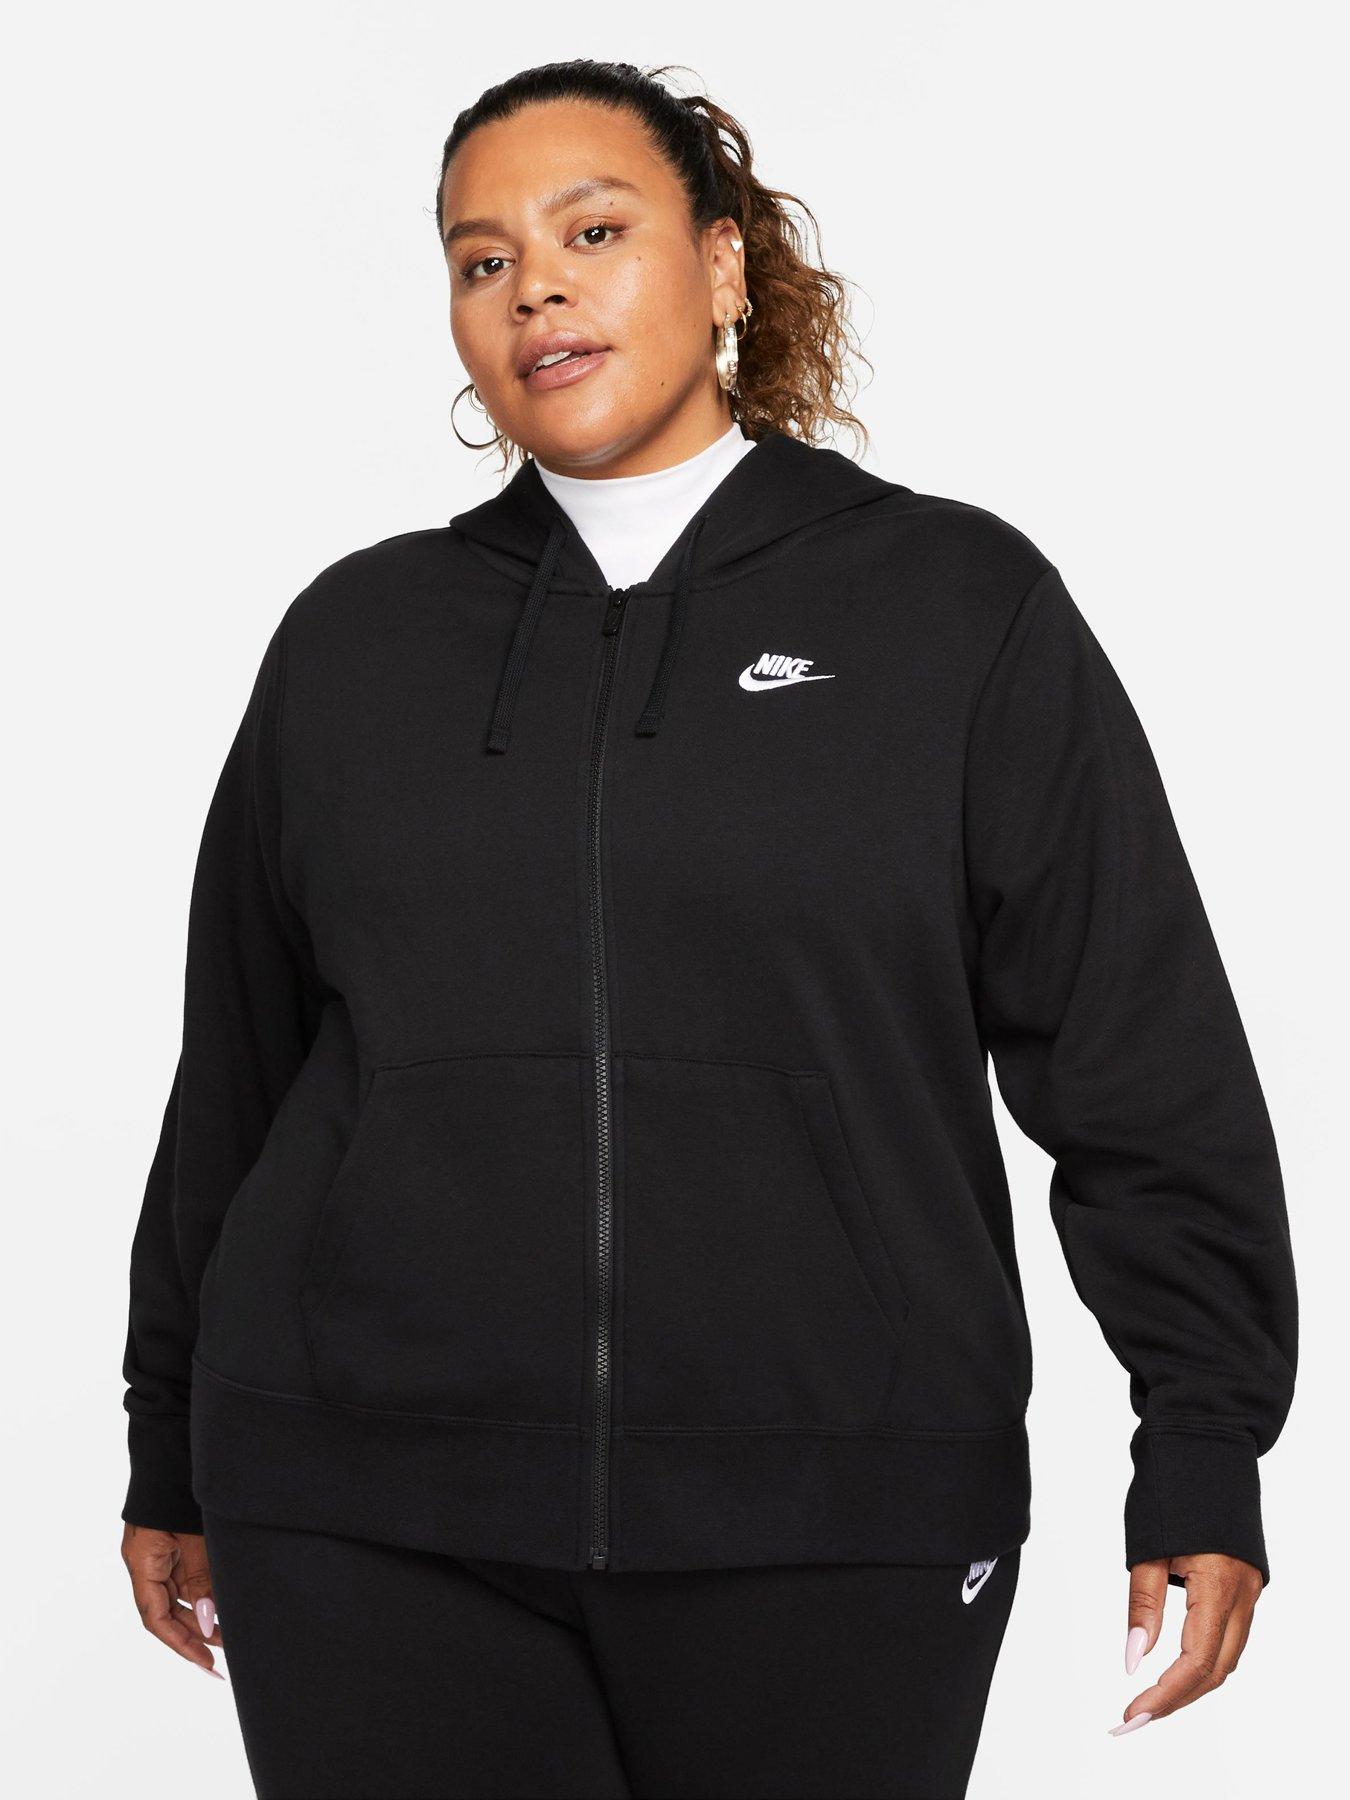 Plus Size | Hoodies & sweatshirts Women | www.very.co.uk